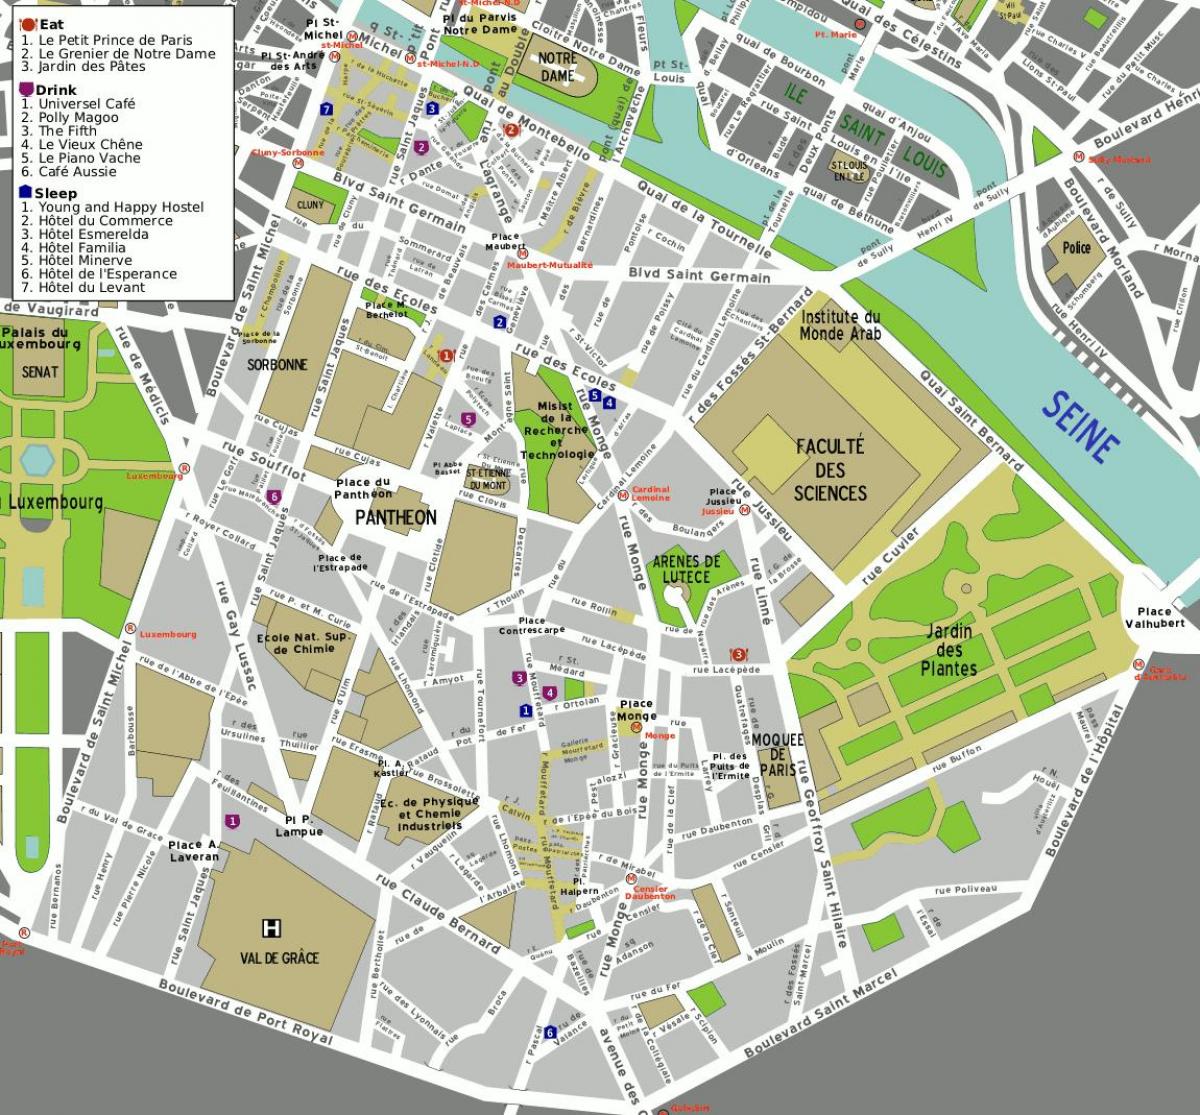 Kort over 5th arrondissement i Paris